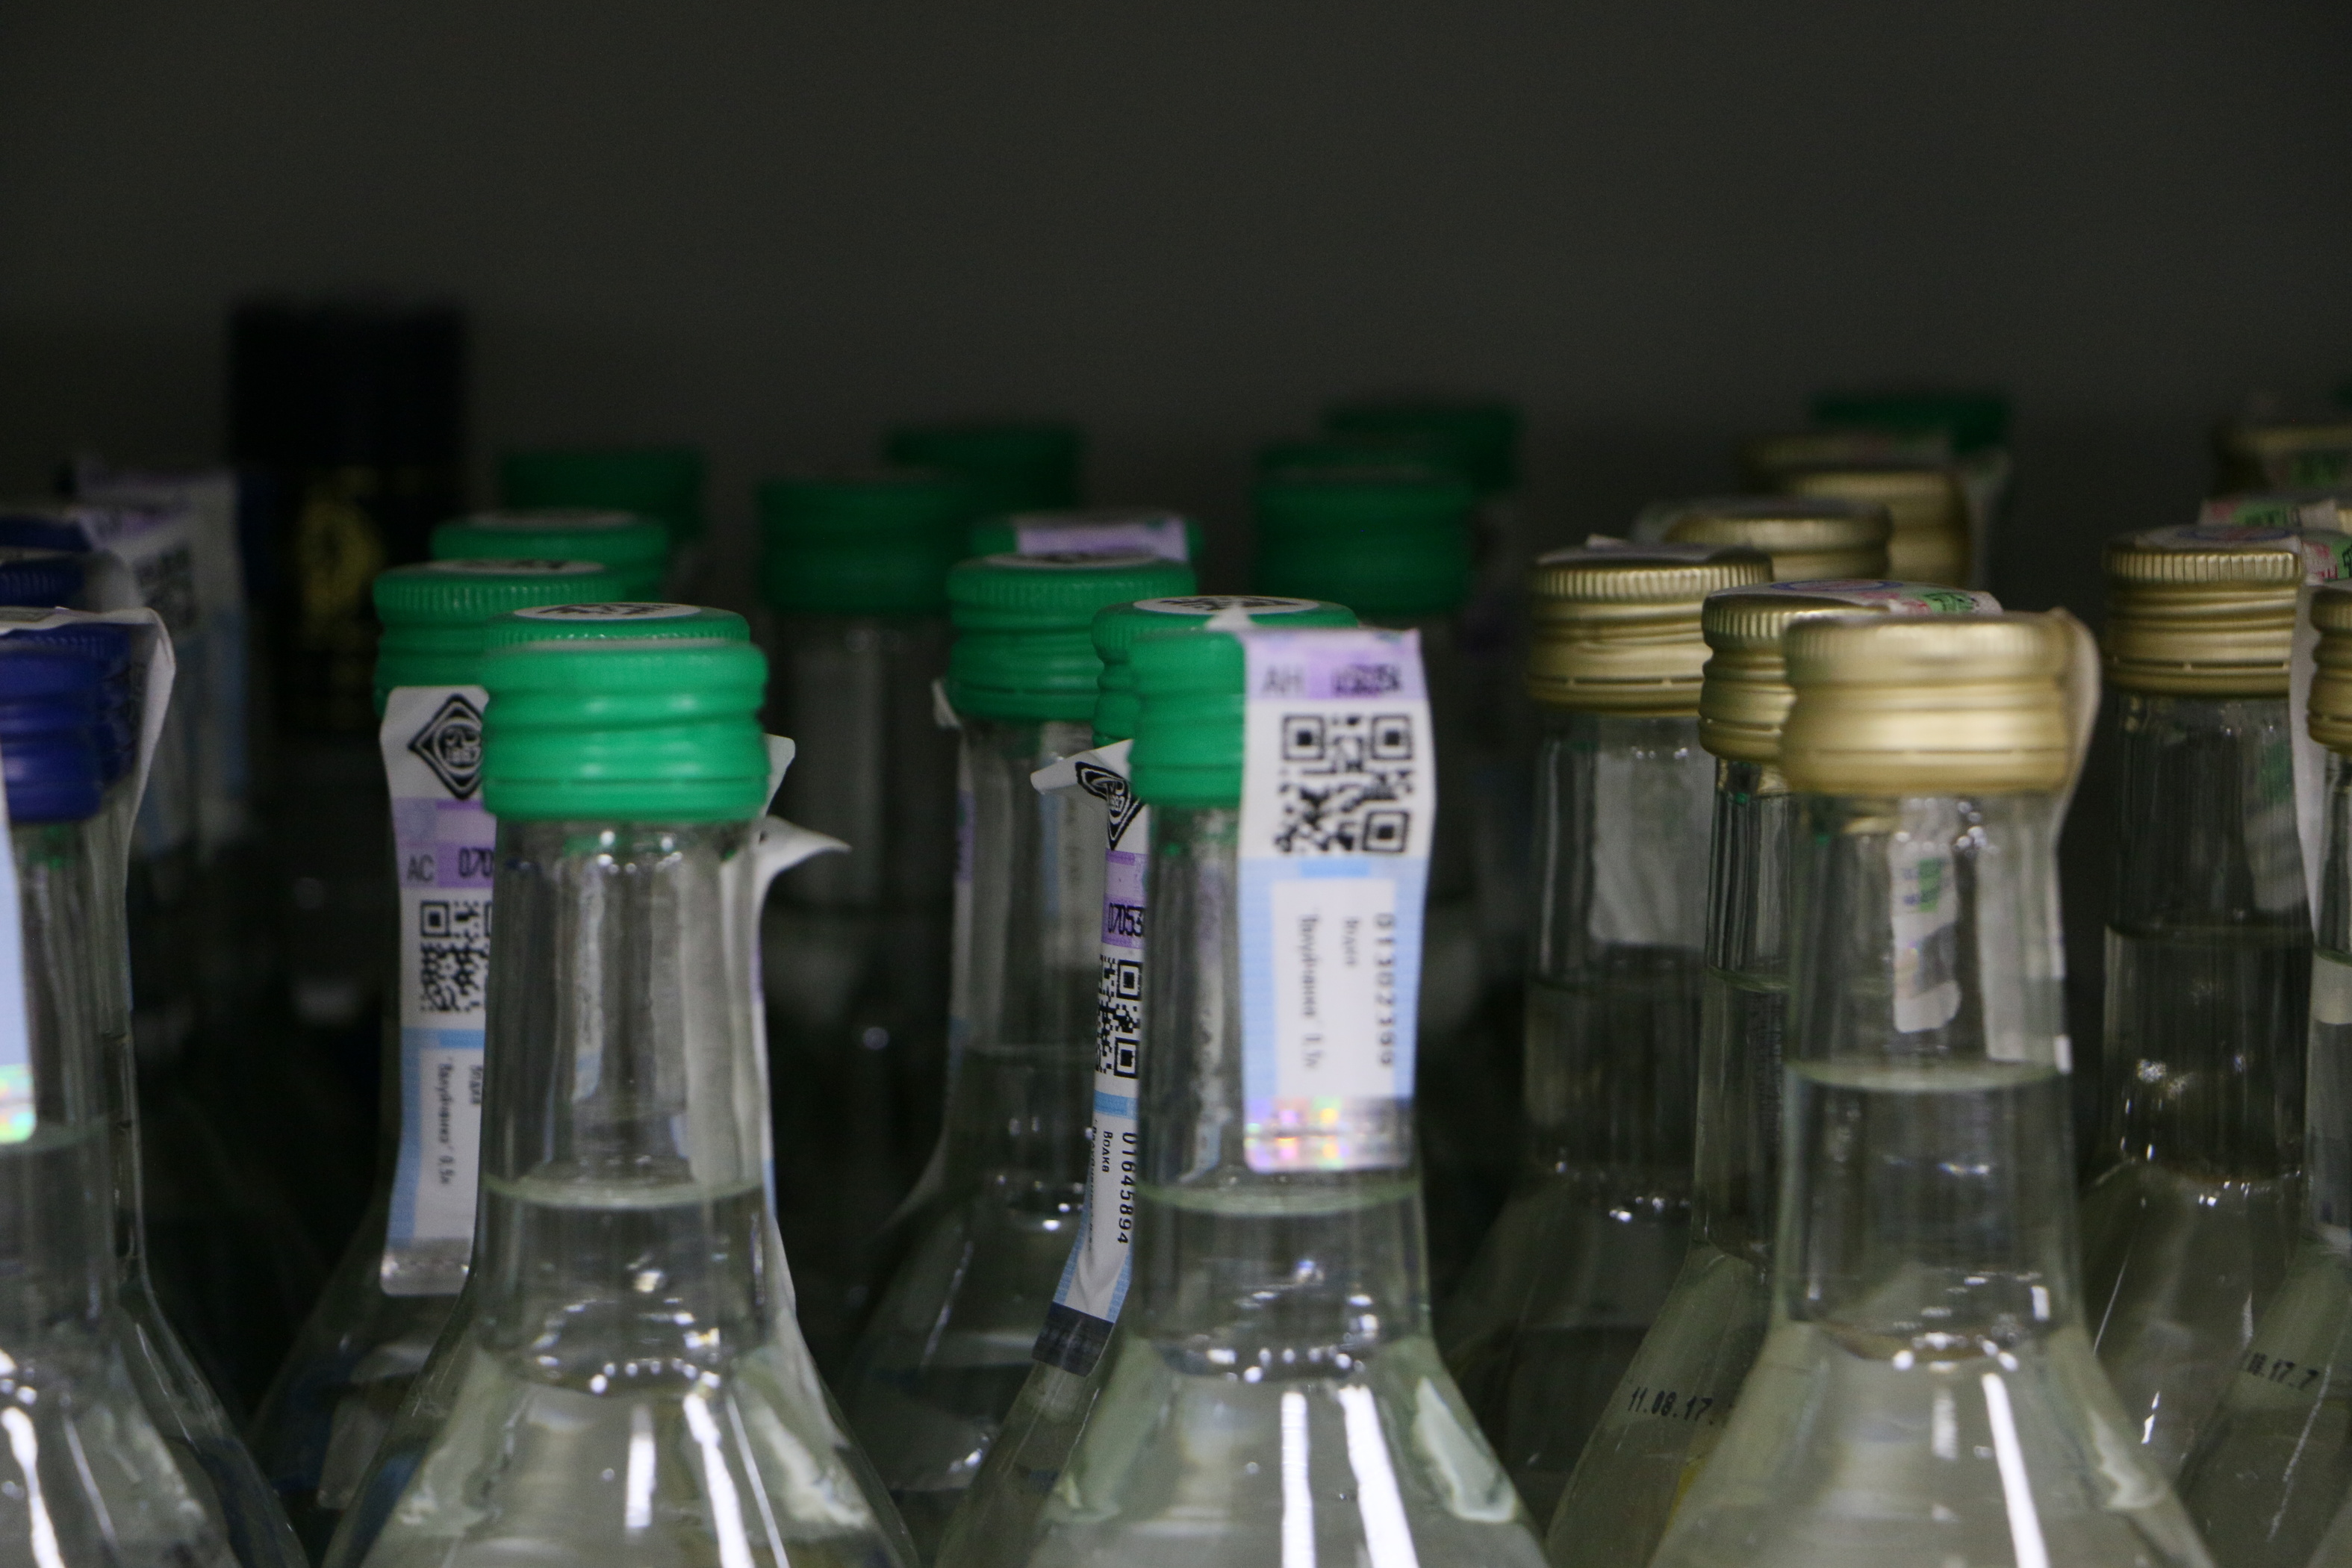 В Тюмени вынесли приговор еще одному продавцу контрафактной водки